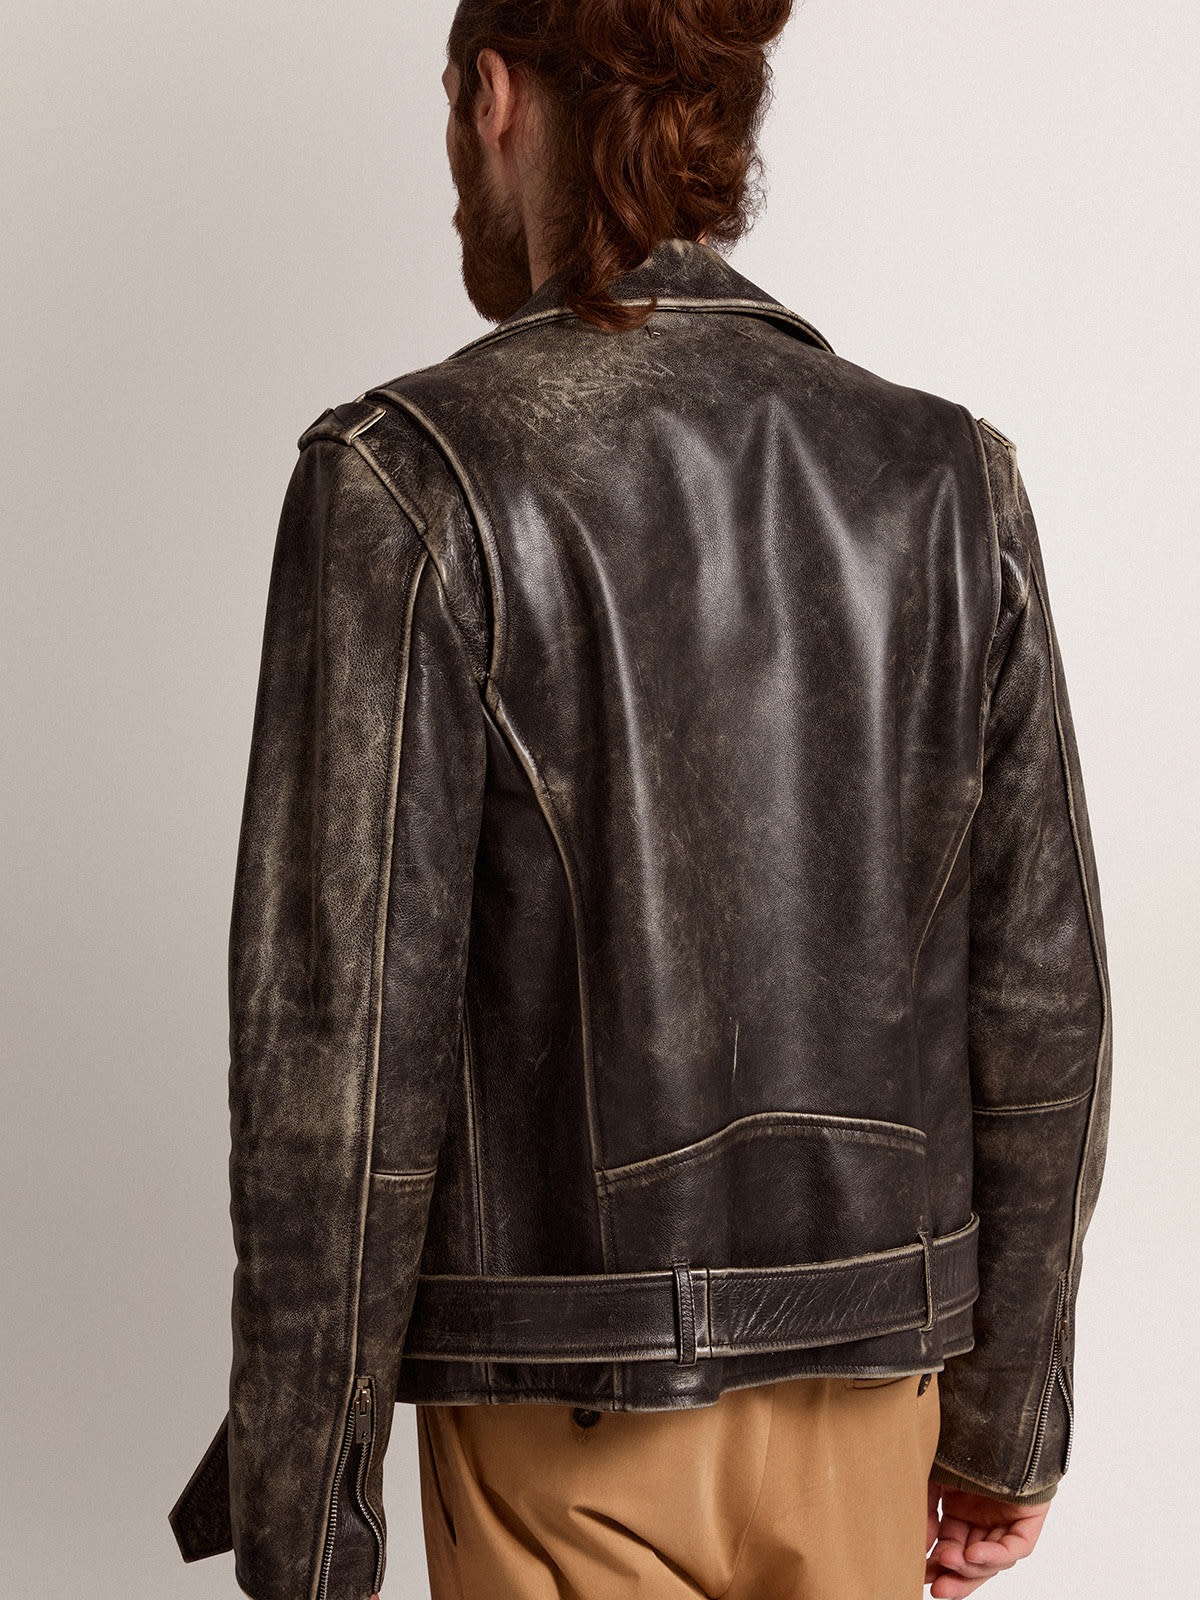 Golden Goose - Men's biker jacket in distressed leather in 